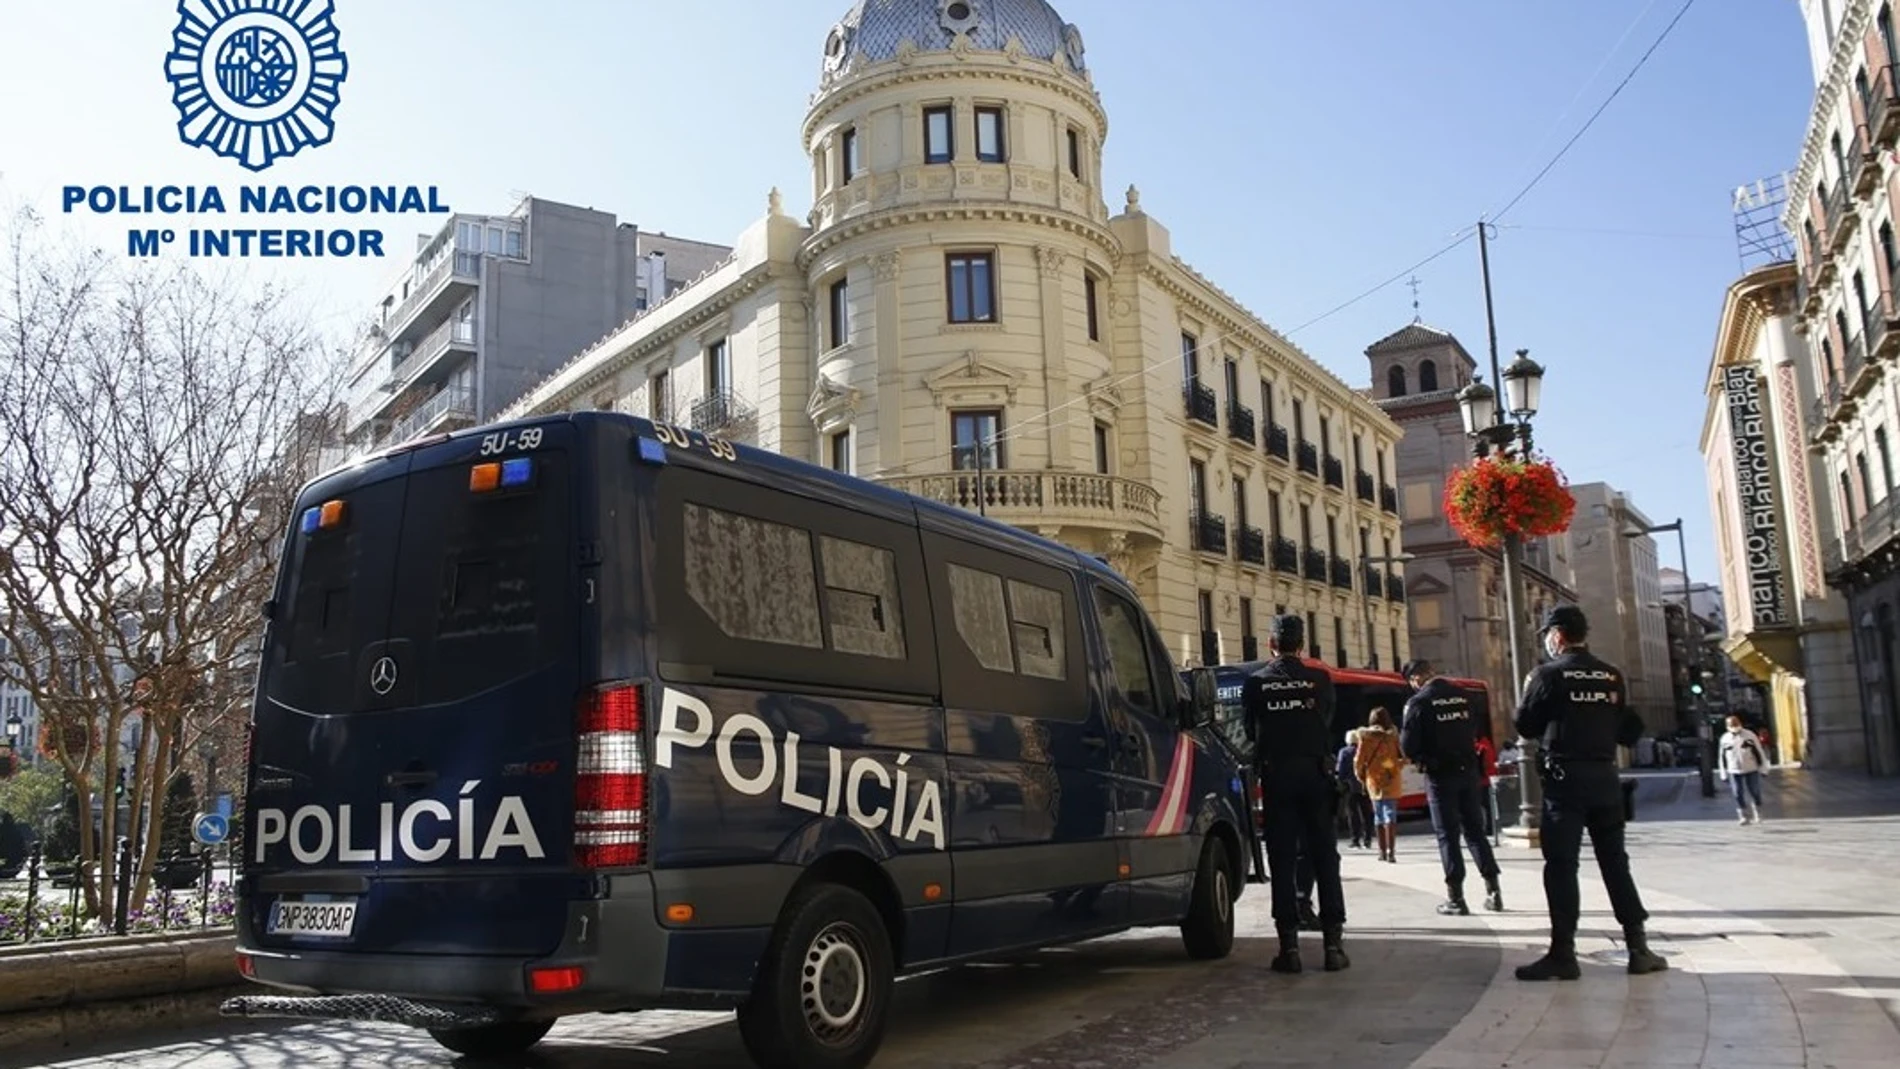 Agentes de la Policía, junto a un vehículo del cuerpo, en Granada